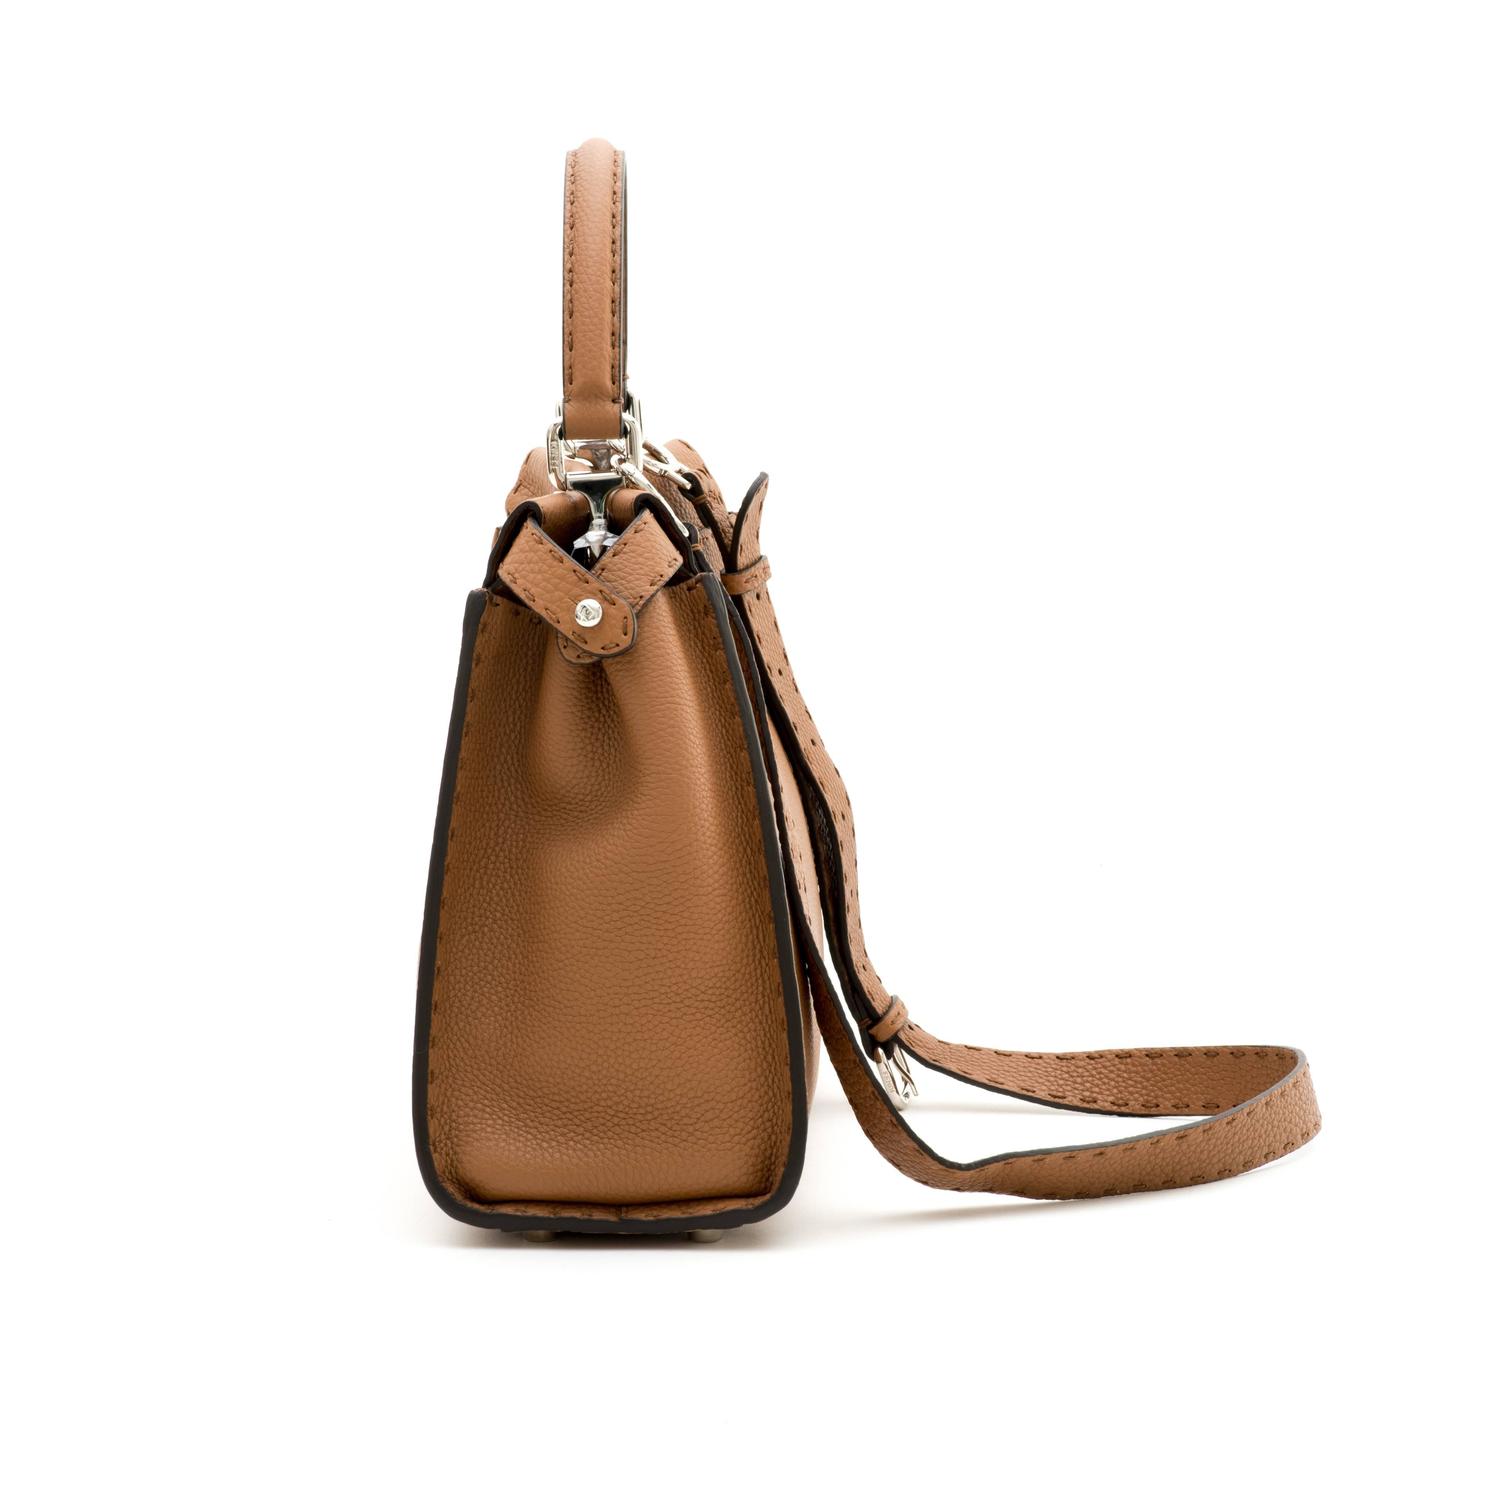 Fendi Peekaboo Medium Leather Satchel Bag, Camel at 1stdibs